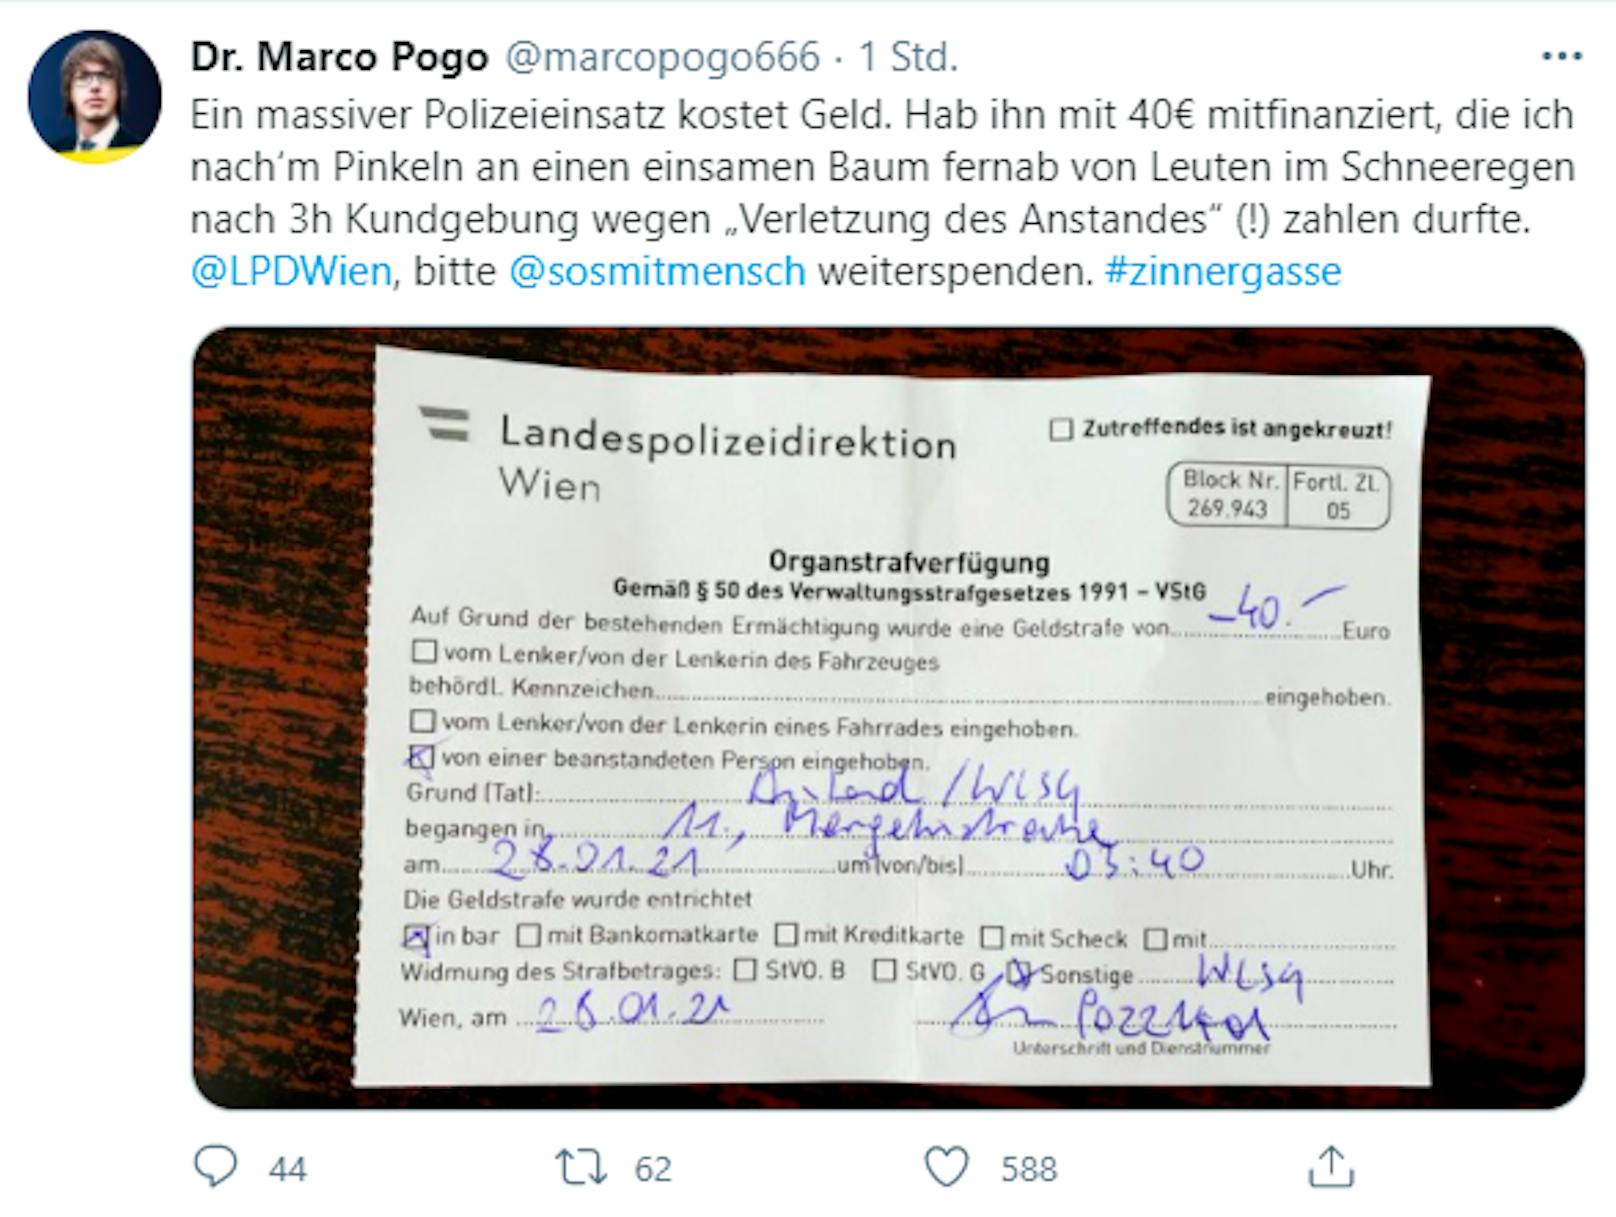 Marco Pogo muss wegen "Verletzung des Anstands" Strafe zahlen